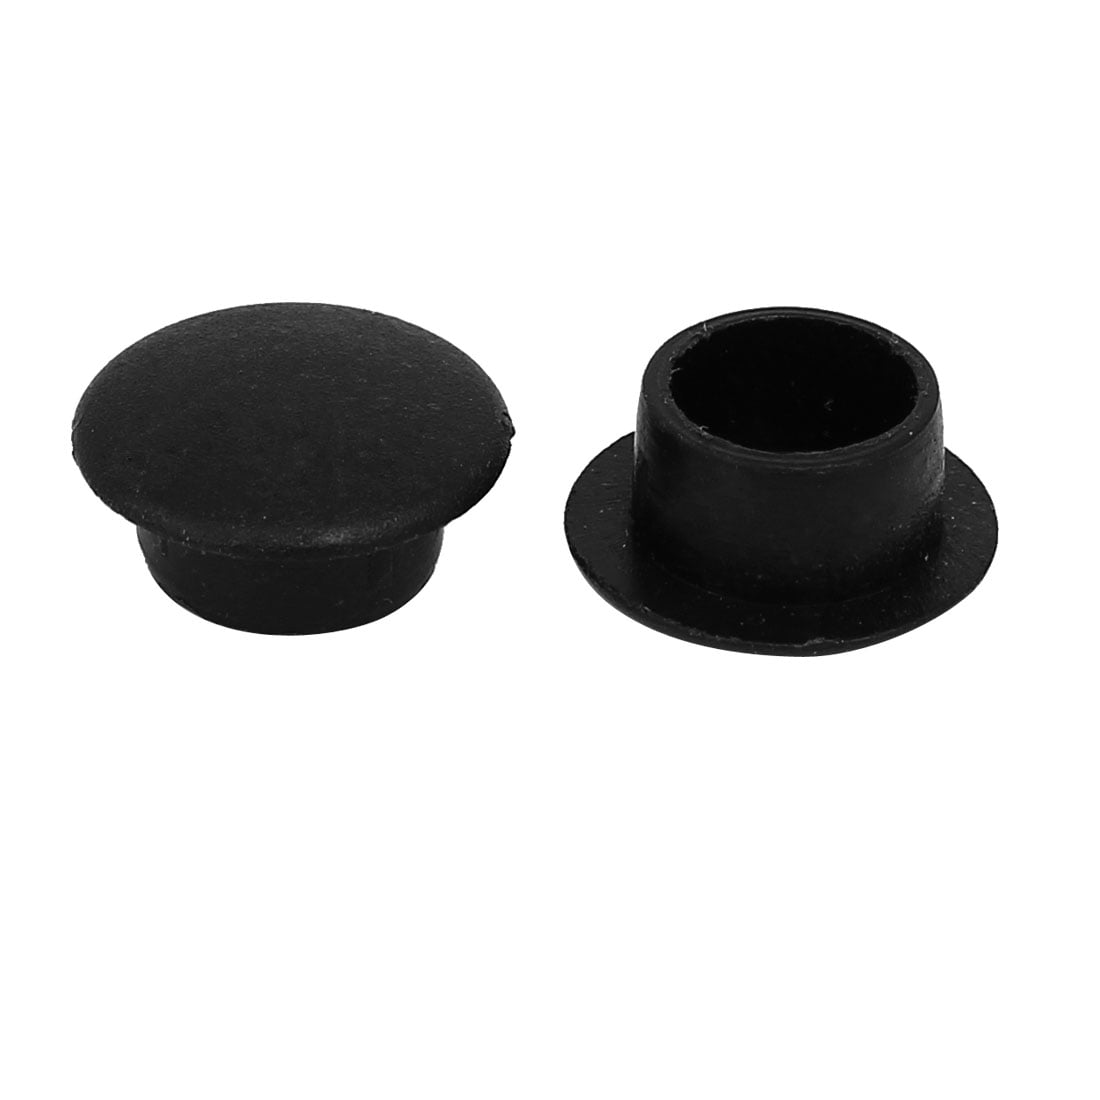 10mm Dia Plastic Straight Line Screw Cap Covers Hole Lids Black 500pcs for sale online 